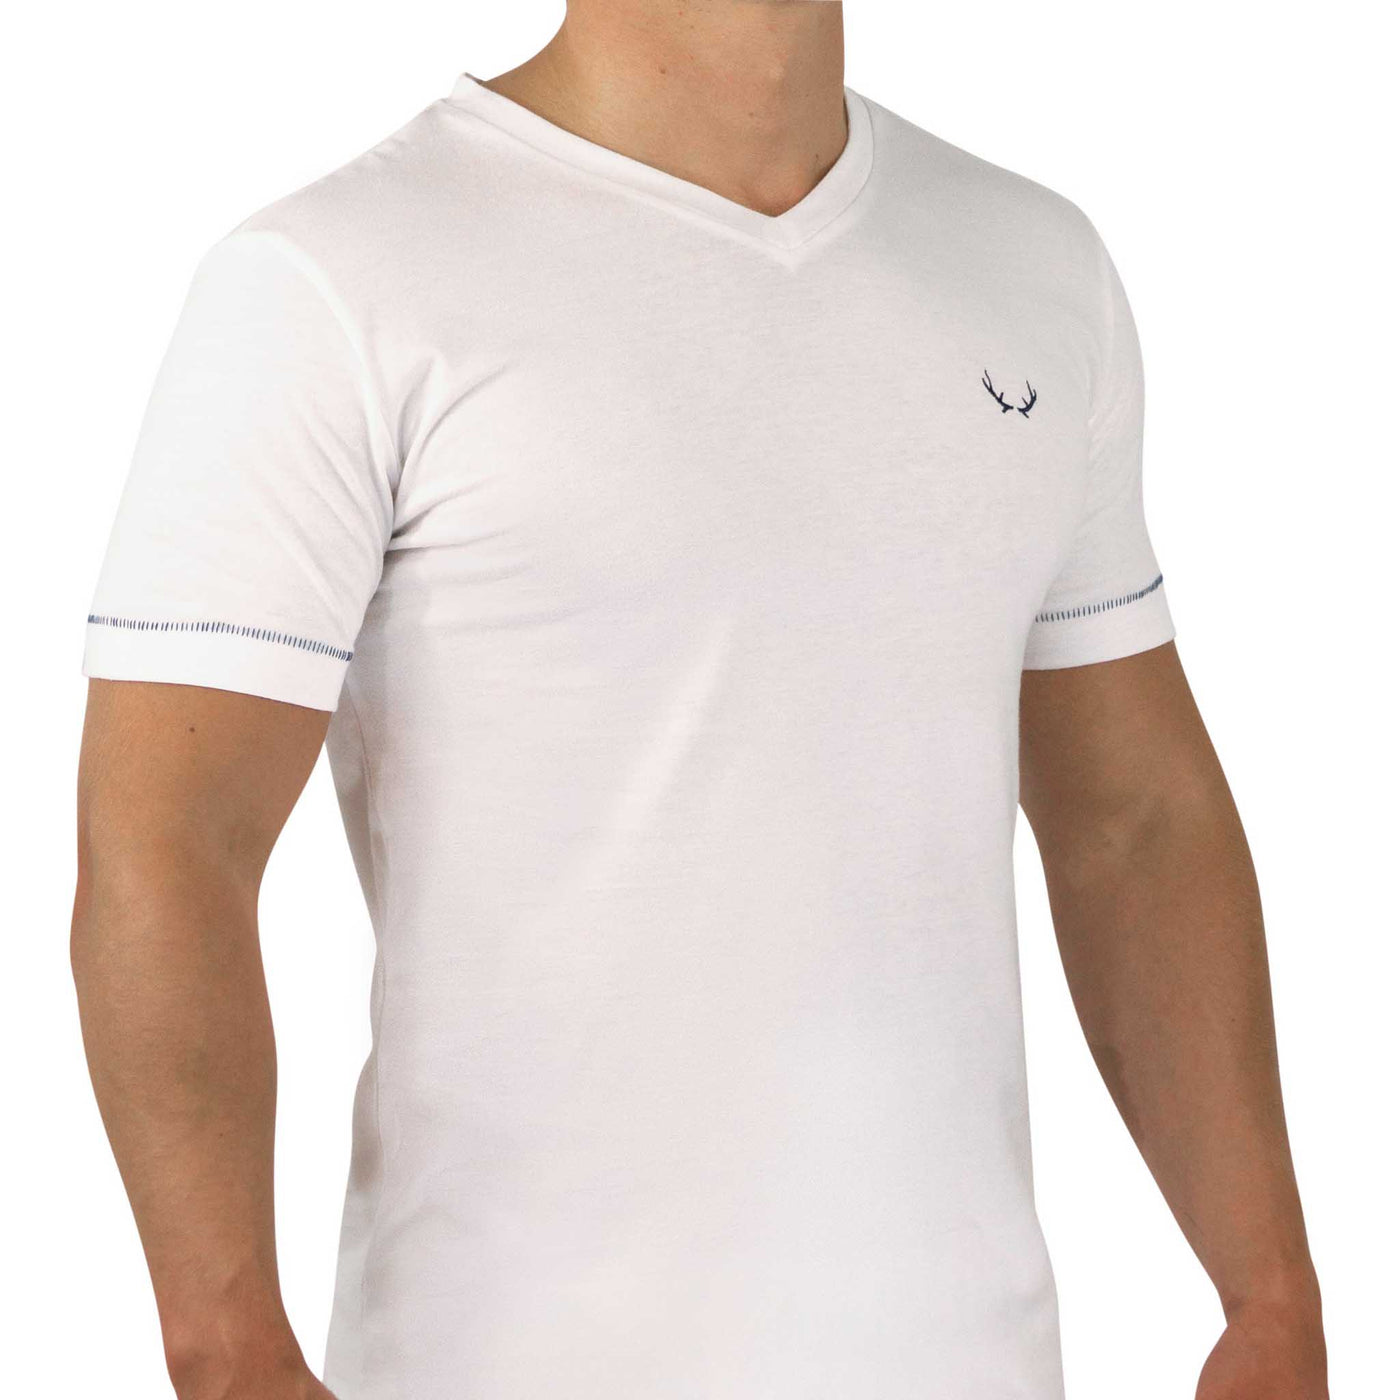 White v-neck organic cotton t-shirt for men